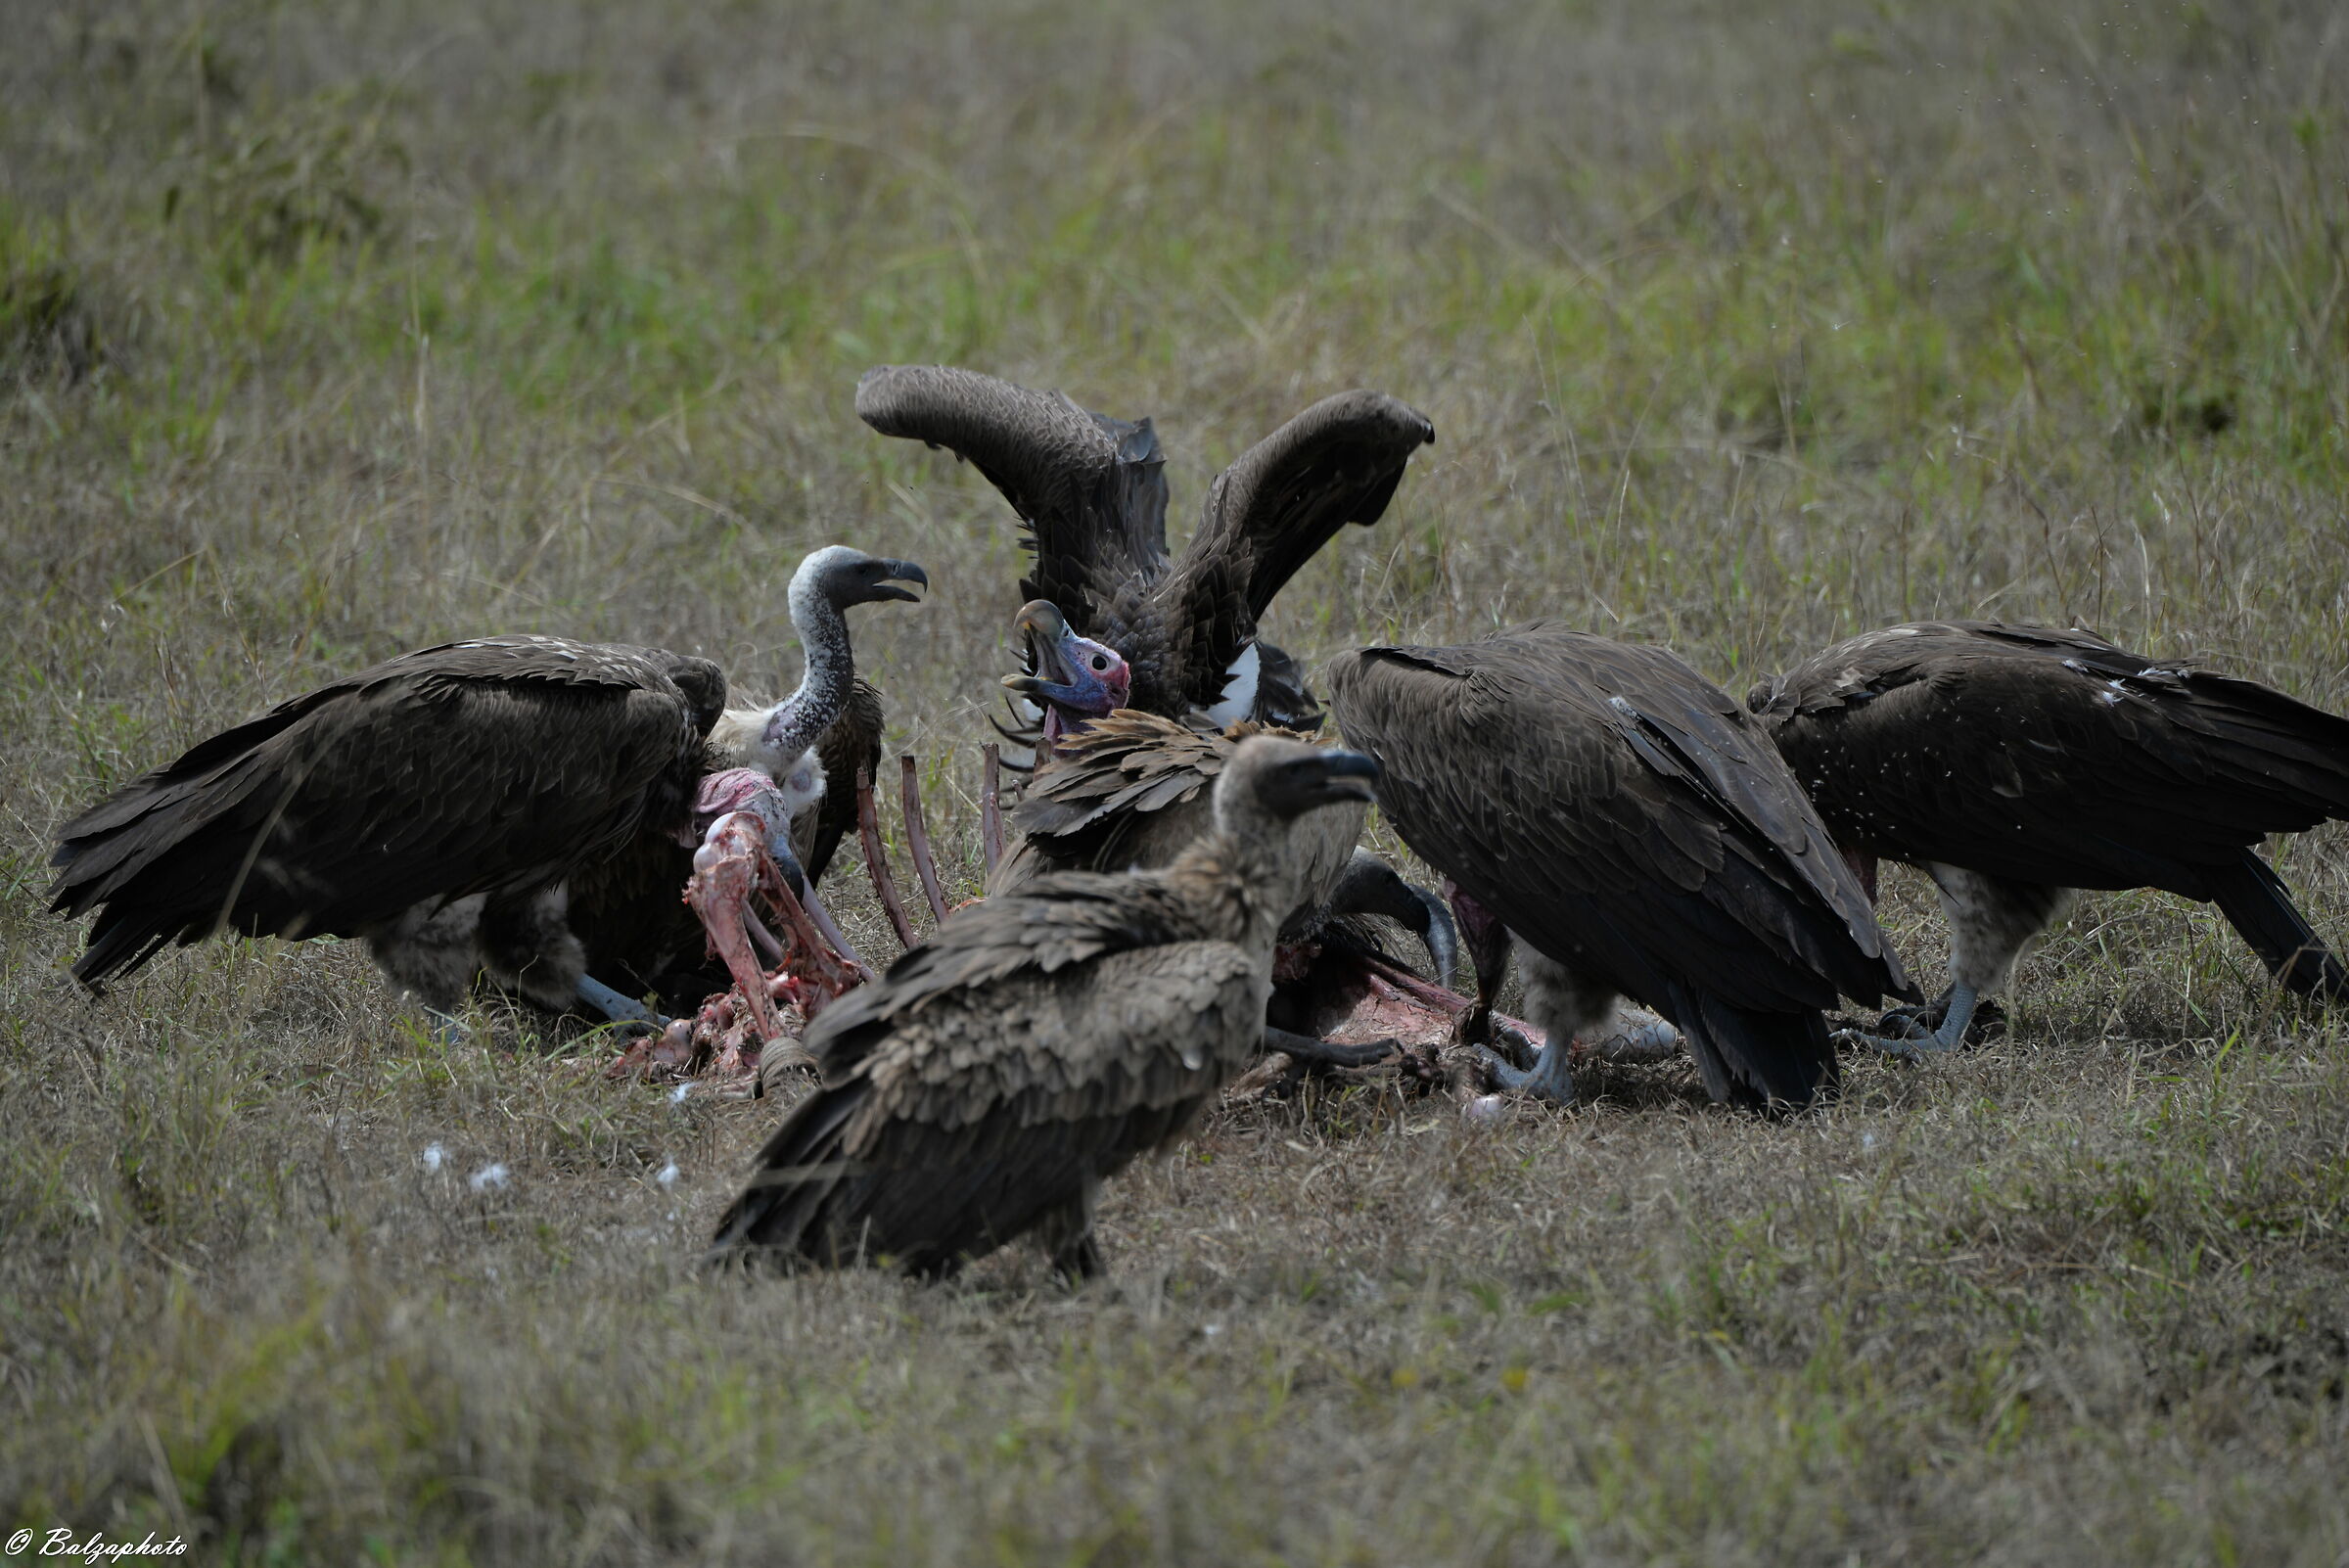 Vultures at risk of extinction ...